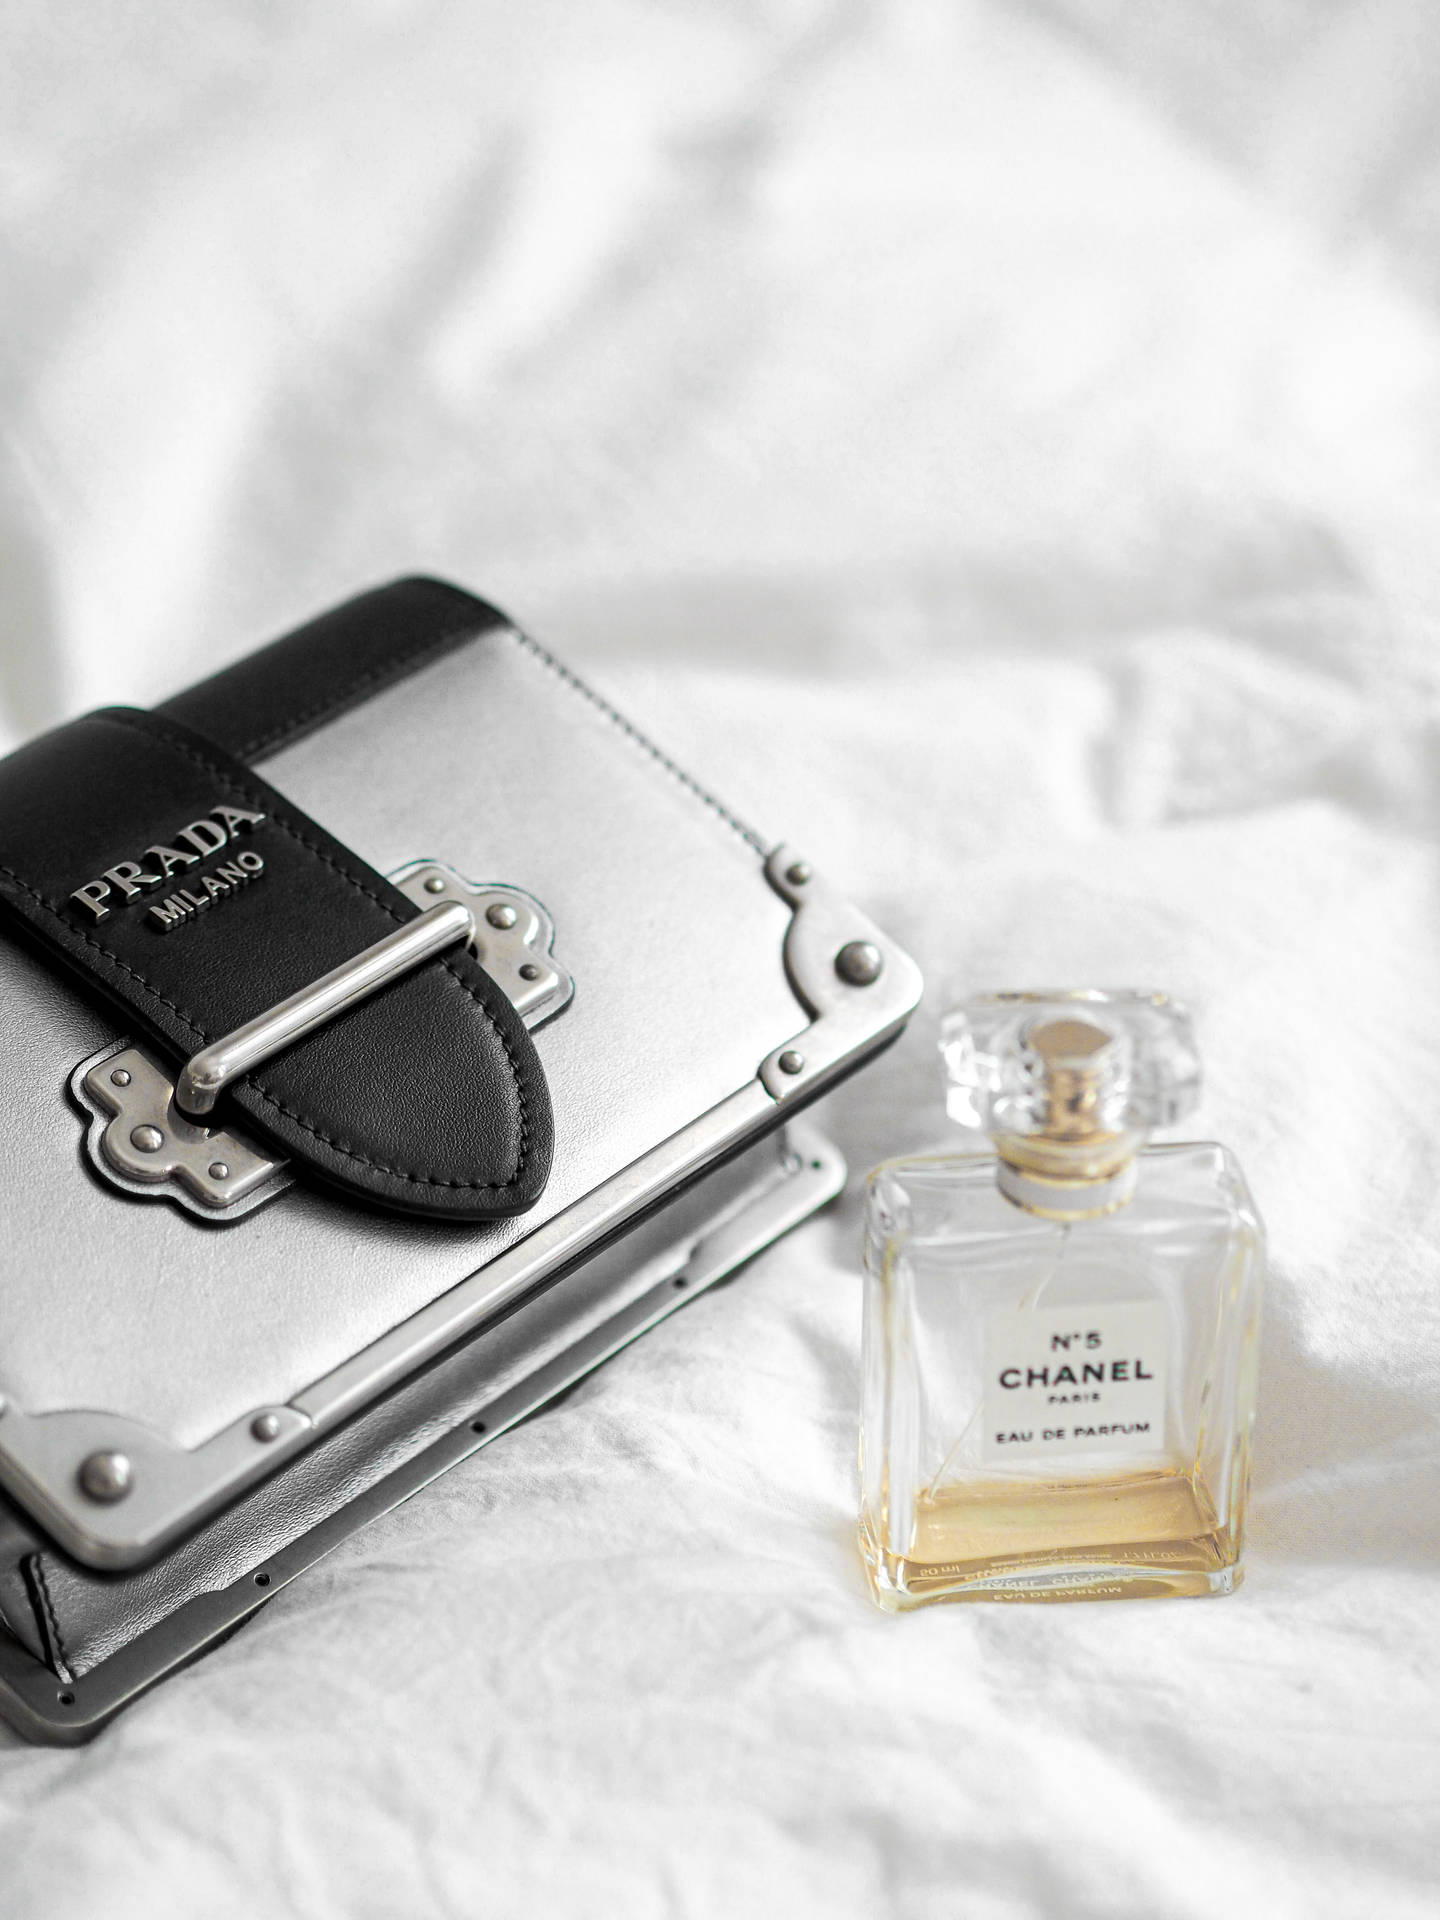 Bolsa Prada Chanel Perfume Papel de Parede